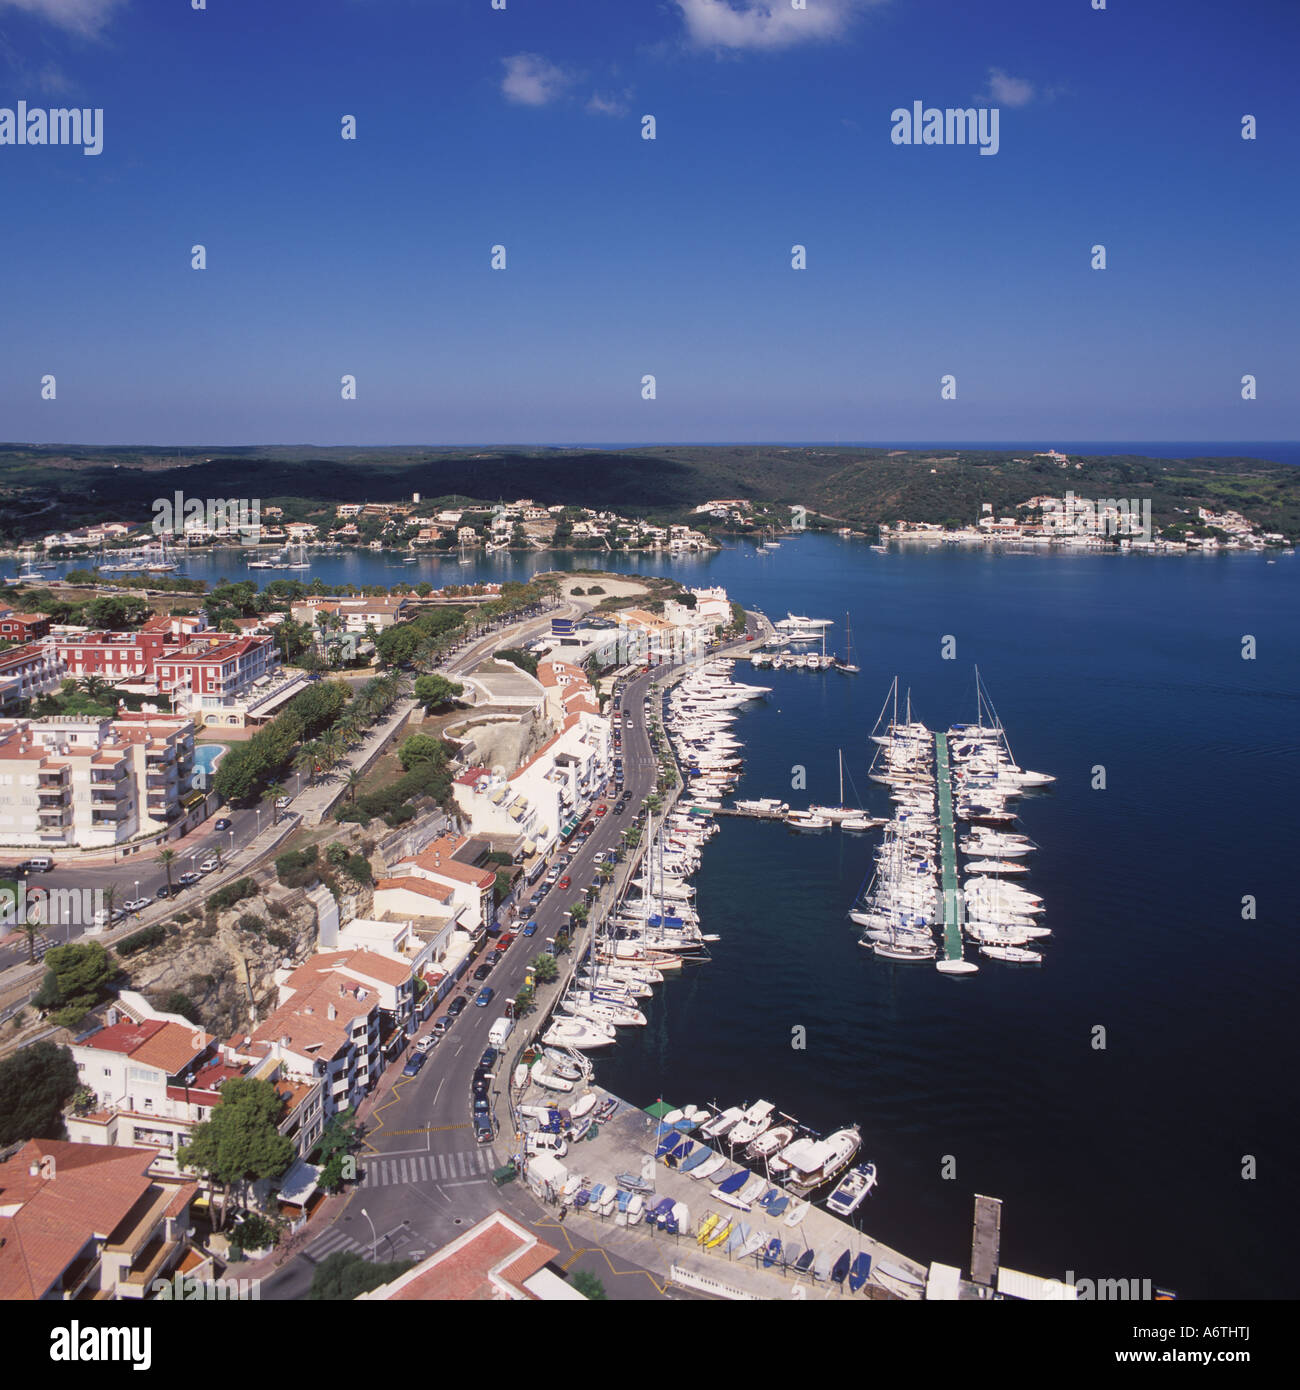 Aerial image of Mahon Yacht Club Puerto de Mahon / Port of Mahon / Mao, Menorca / Minorca, Balearic Islands, Spain. Stock Photo